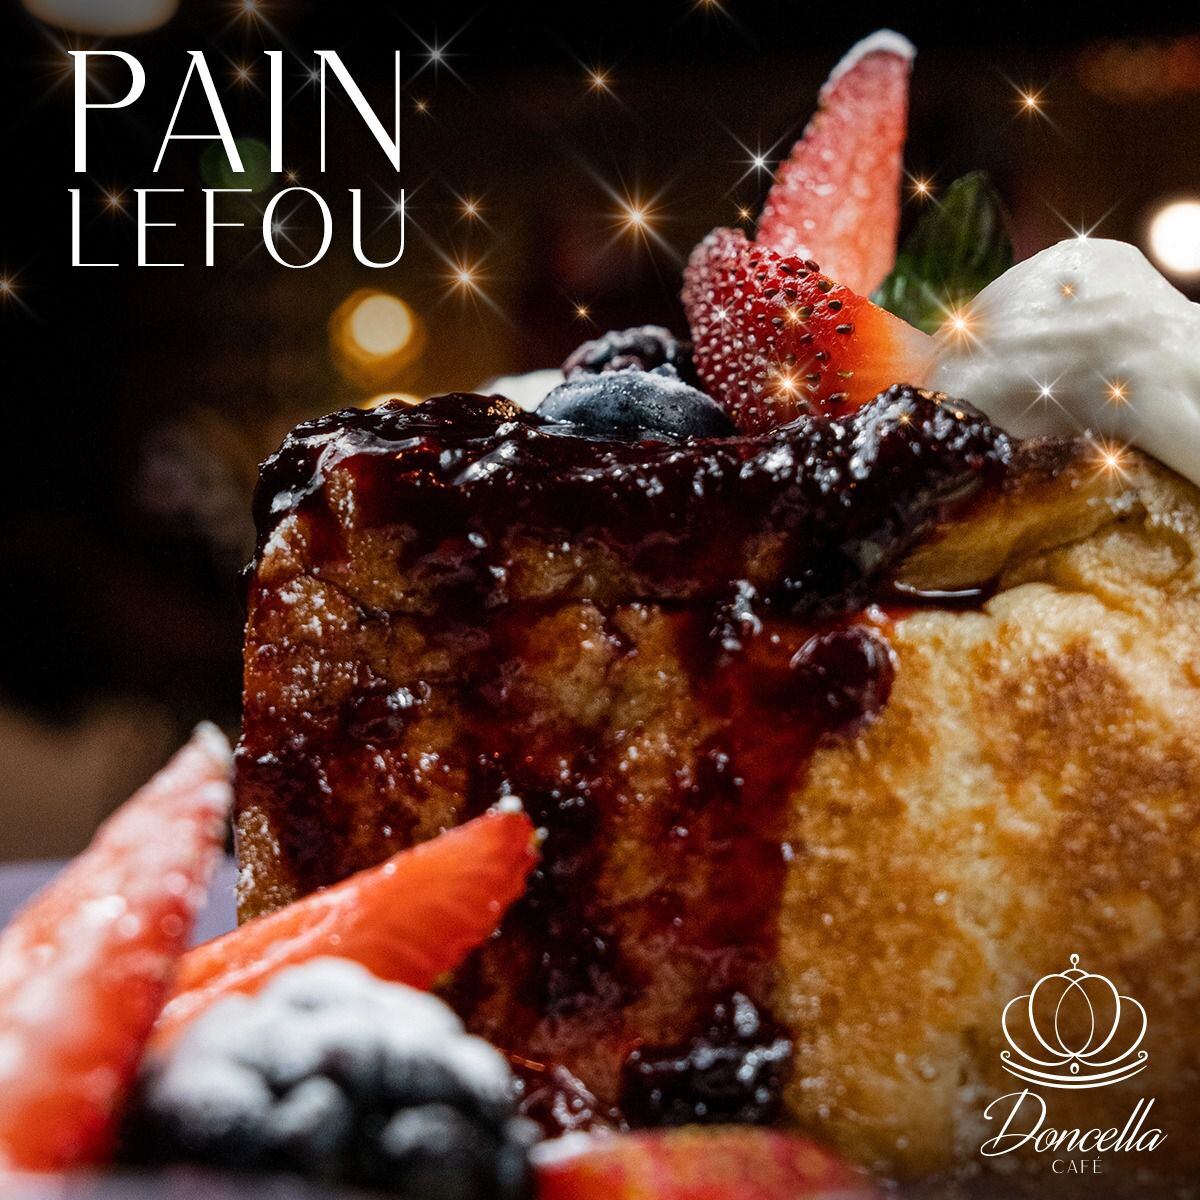 El Pain Lefou es un pan francés con crema inglesa, compota de frutos rojos y crema montada. (Foto: Facebook / Doncella Café).